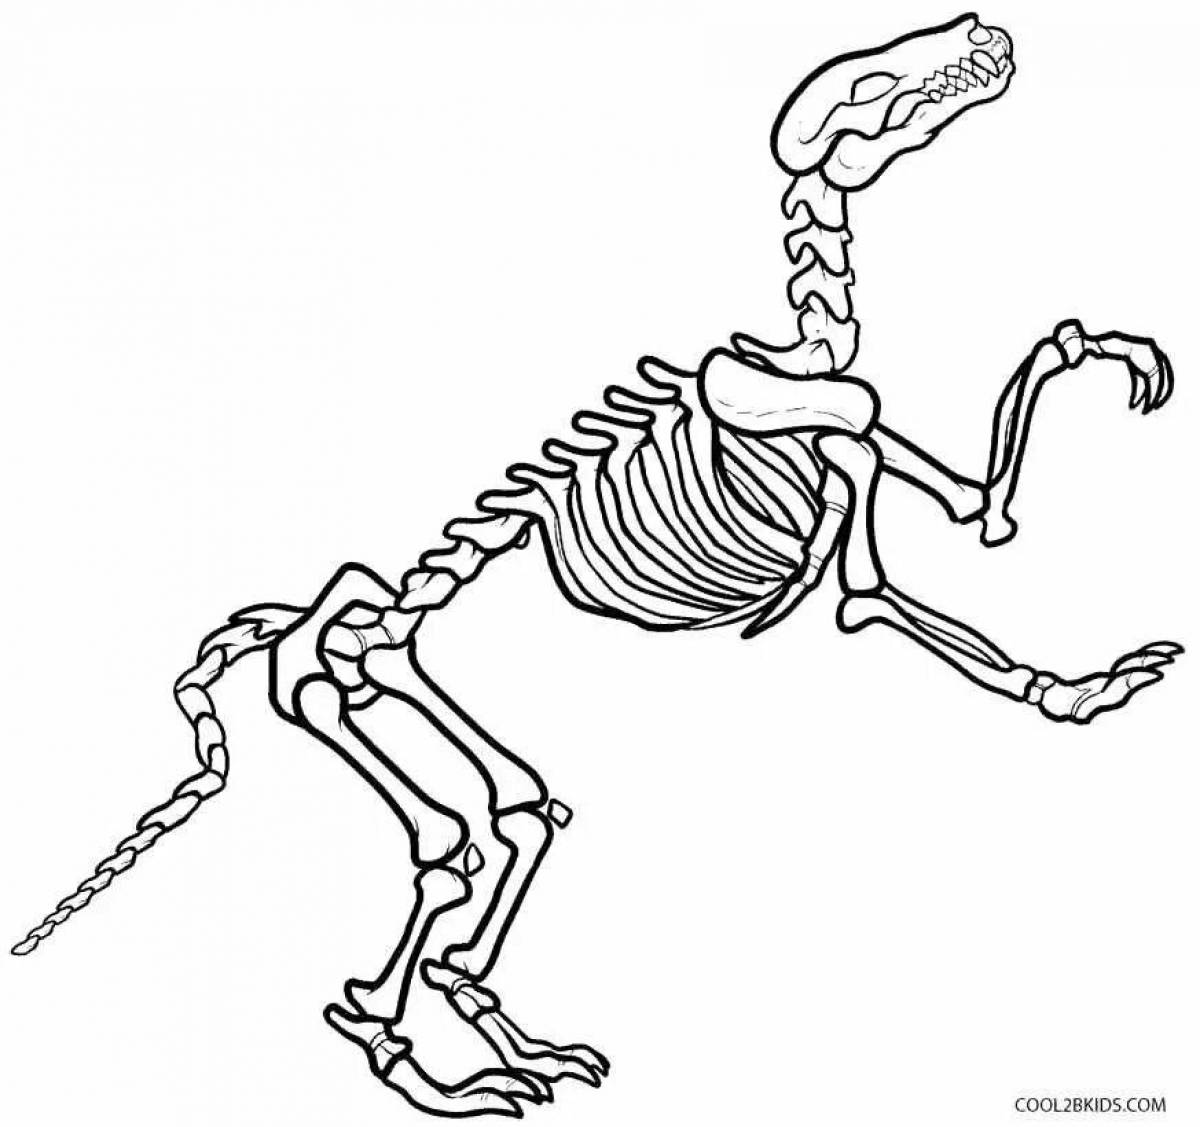 Великолепная раскраска скелет динозавра